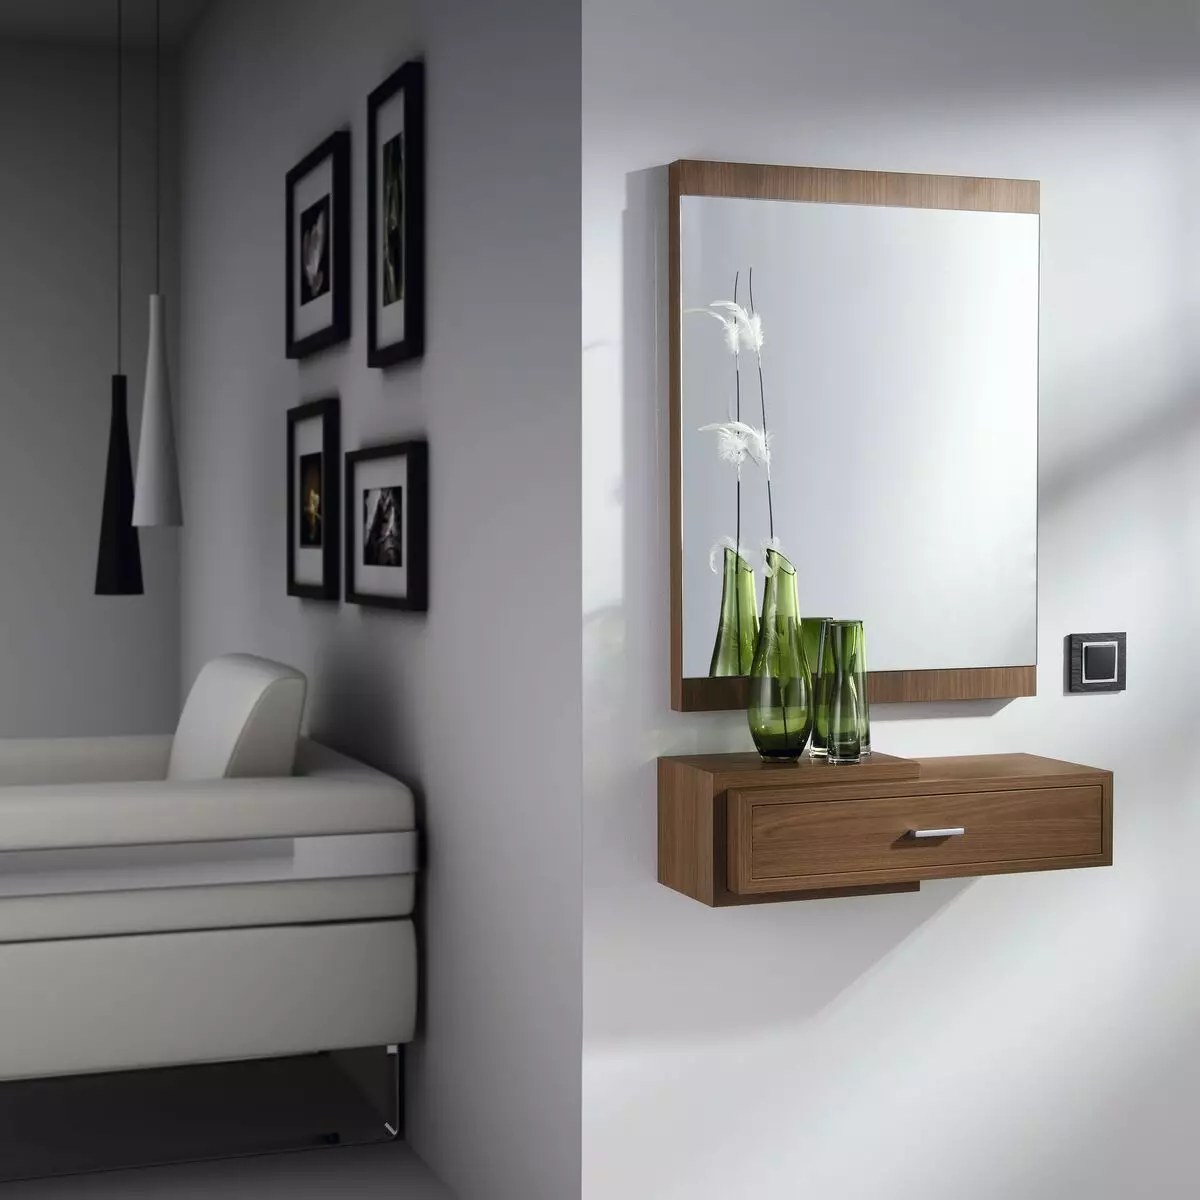 Një pasqyrë me një raft në korridor: pasqyra mur dhe dysheme. Si të zgjidhni një montim apo ndonjë pasqyrë tjetër me një raft? 9300_16